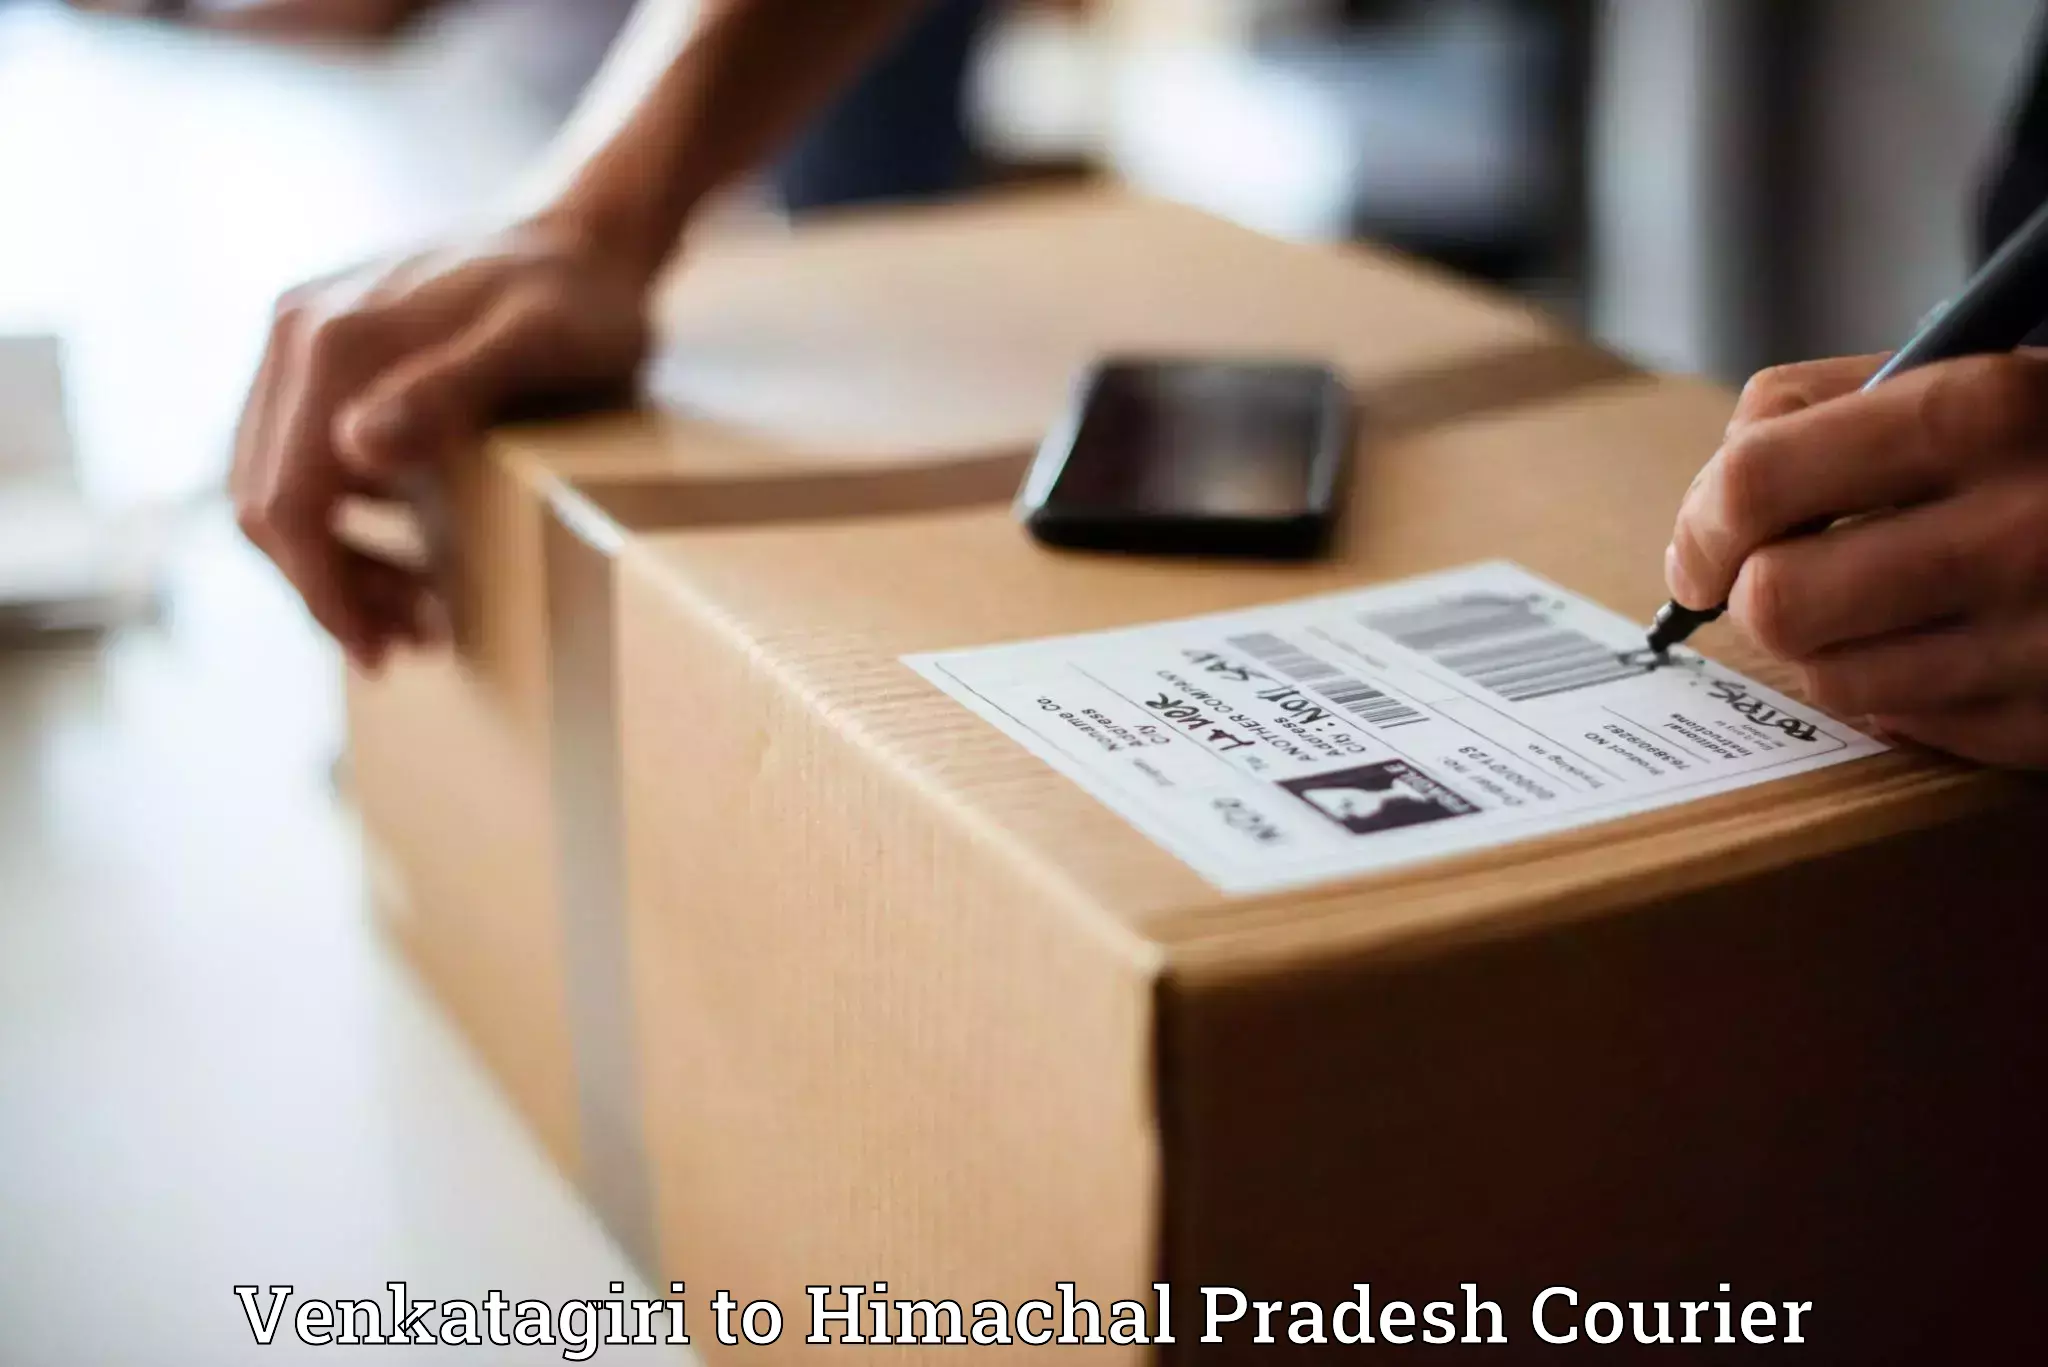 Custom courier packaging in Venkatagiri to Himachal Pradesh